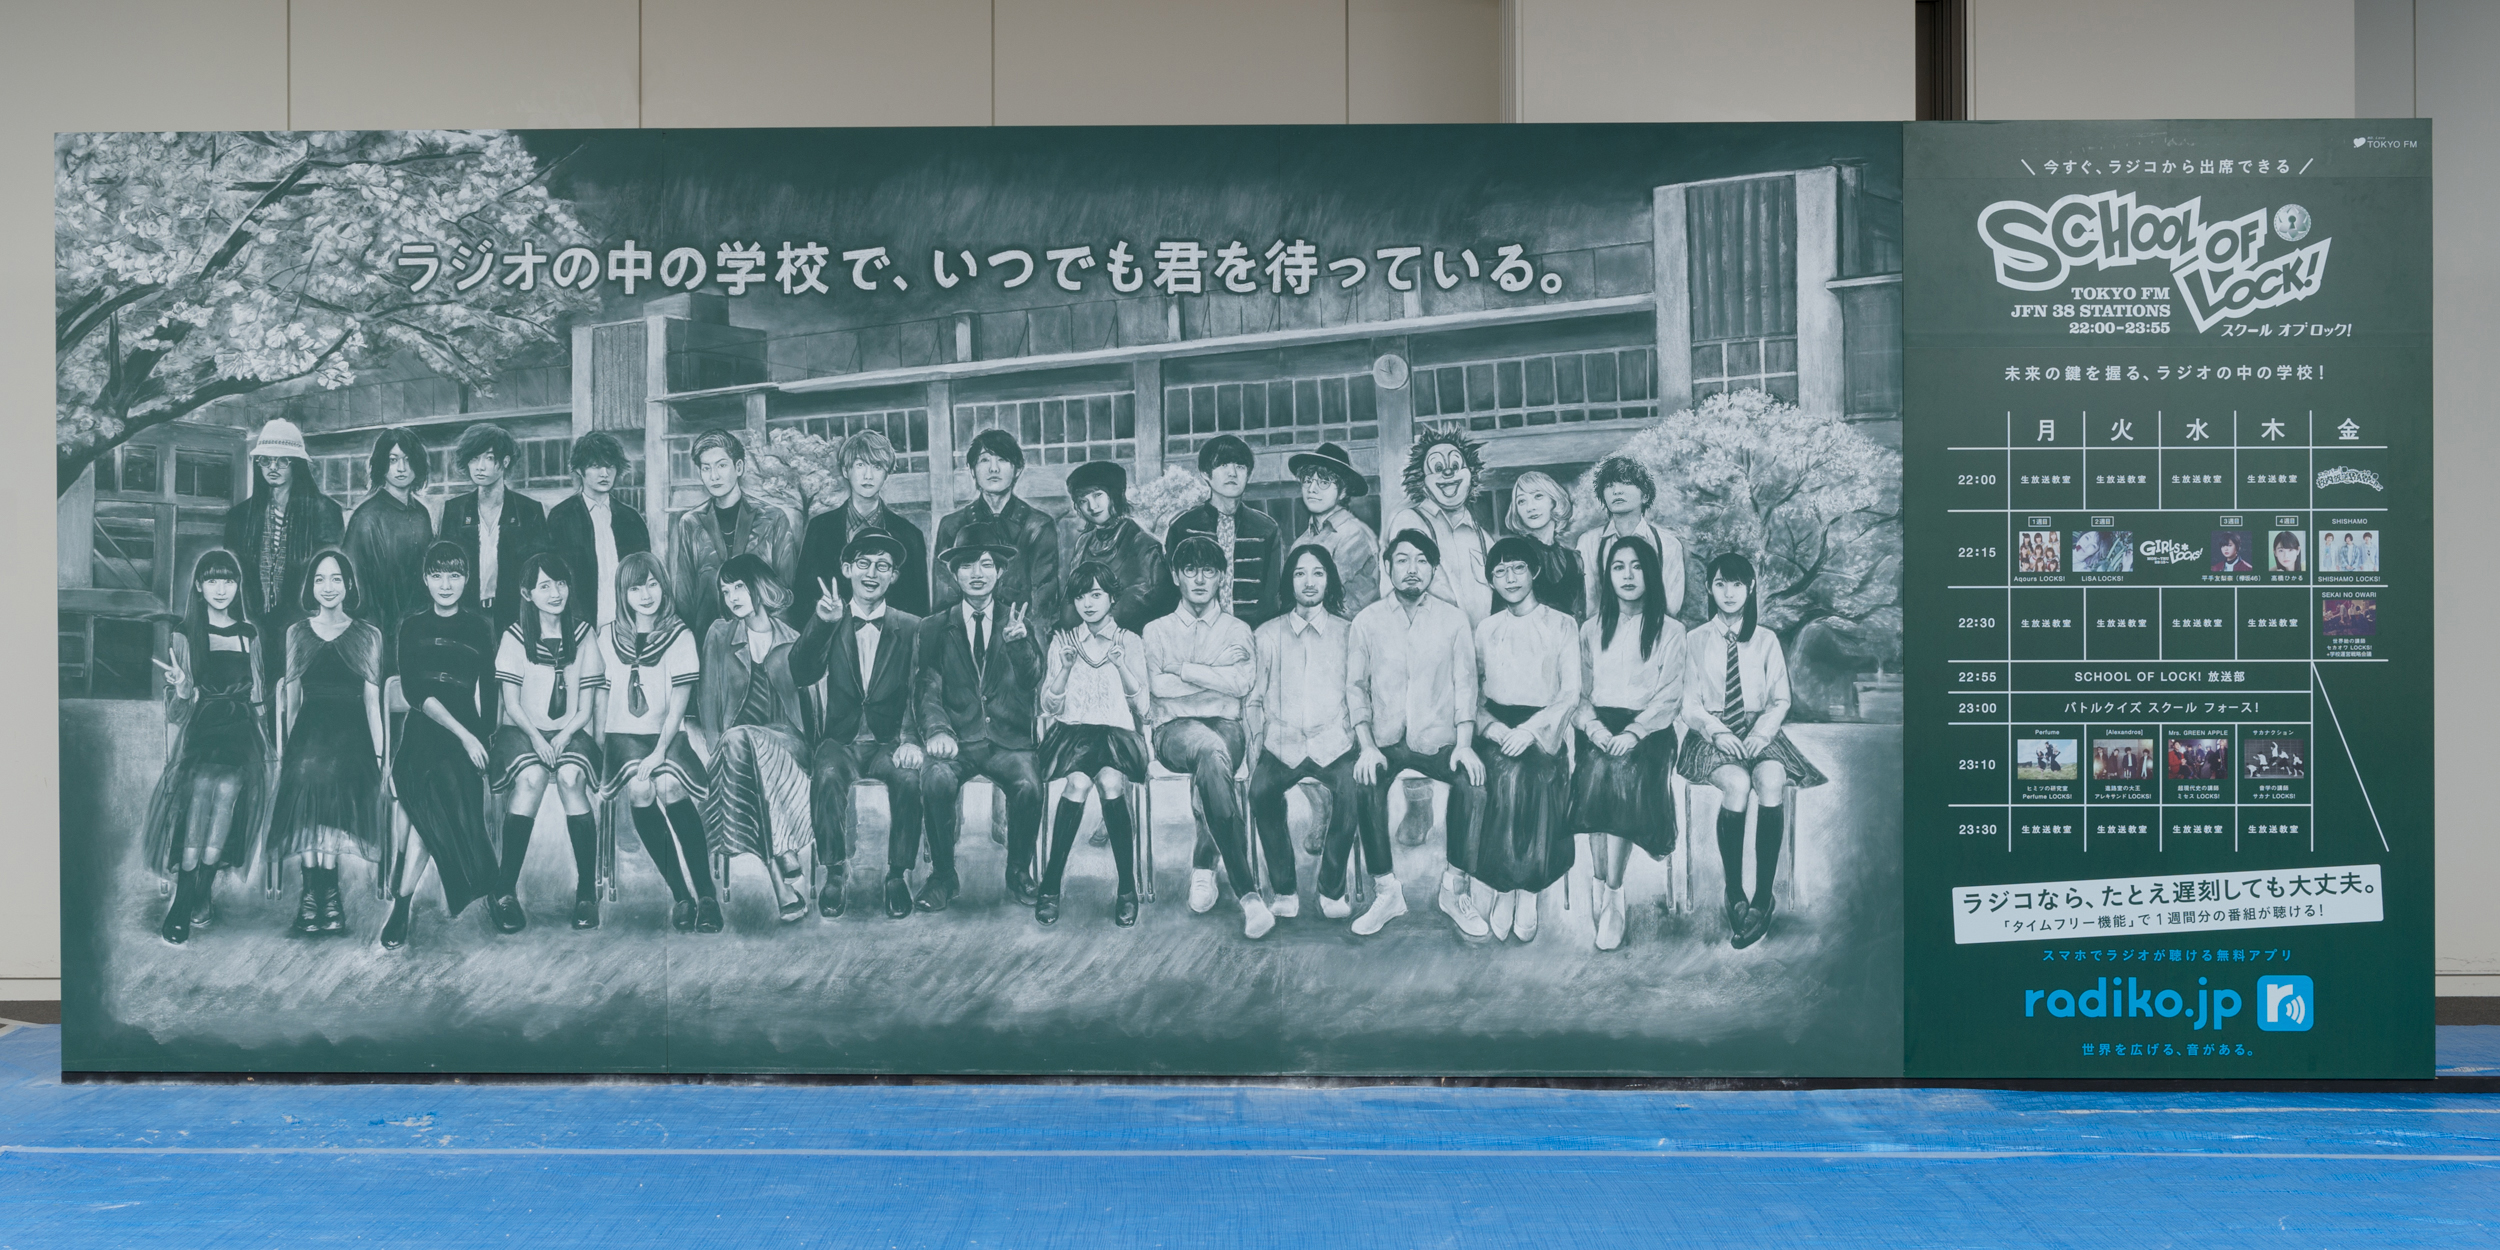 ラジオの中の学校 School Of Lock 出演者勢揃い 奇跡の巨大 黒板アート 広告が池袋駅に掲出 Tokyo Fmのプレスリリース